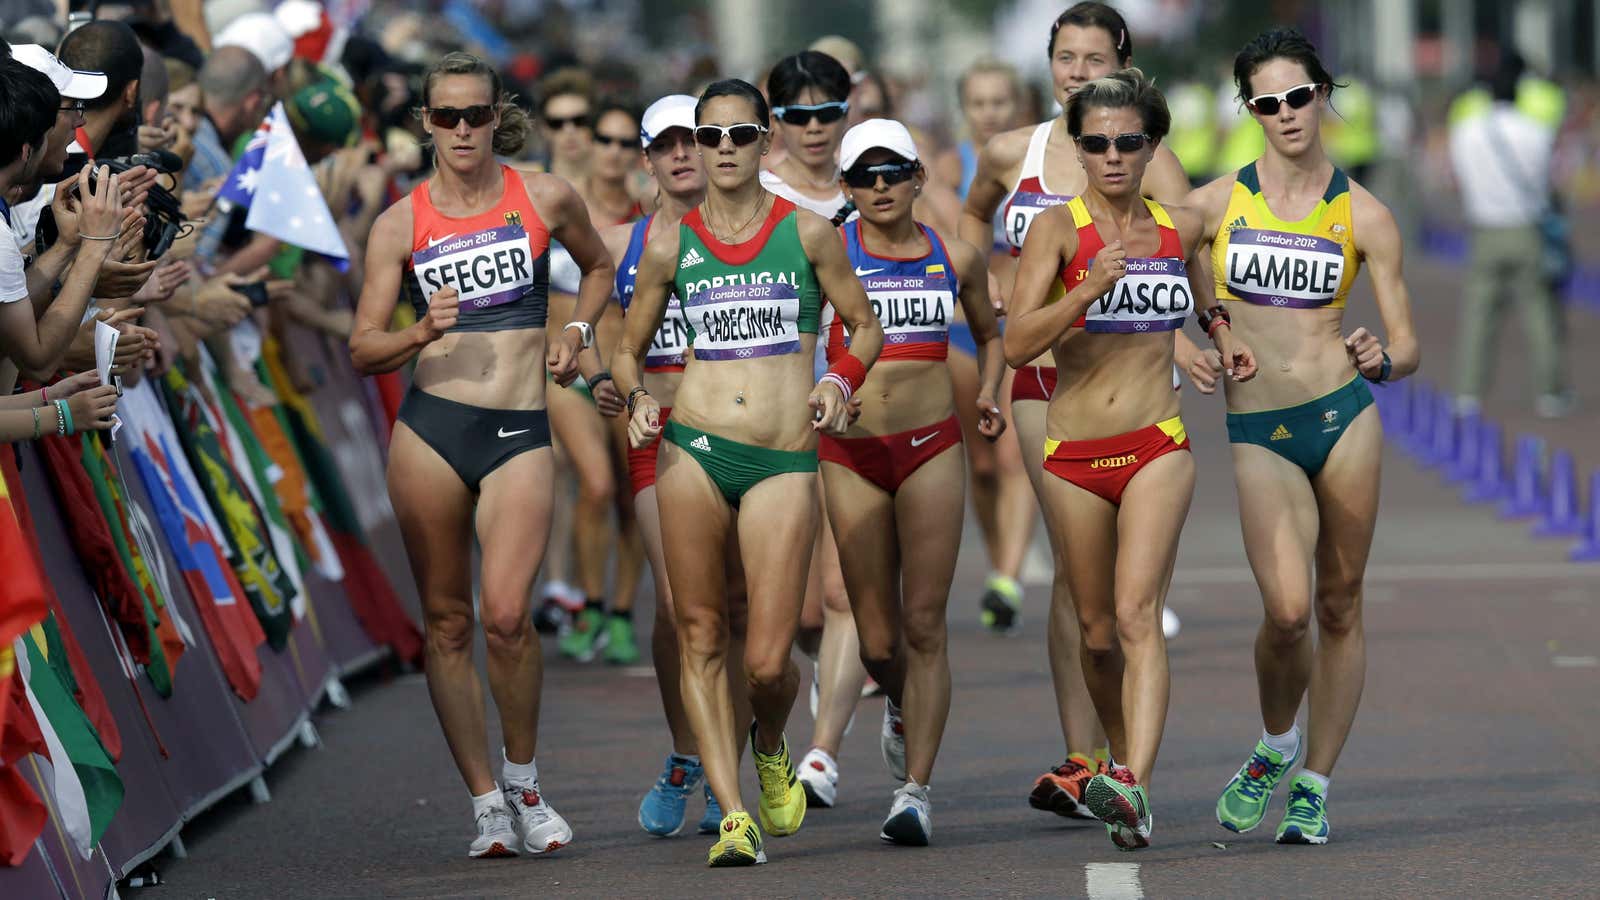 Race walking in the 2012 Olympics in London